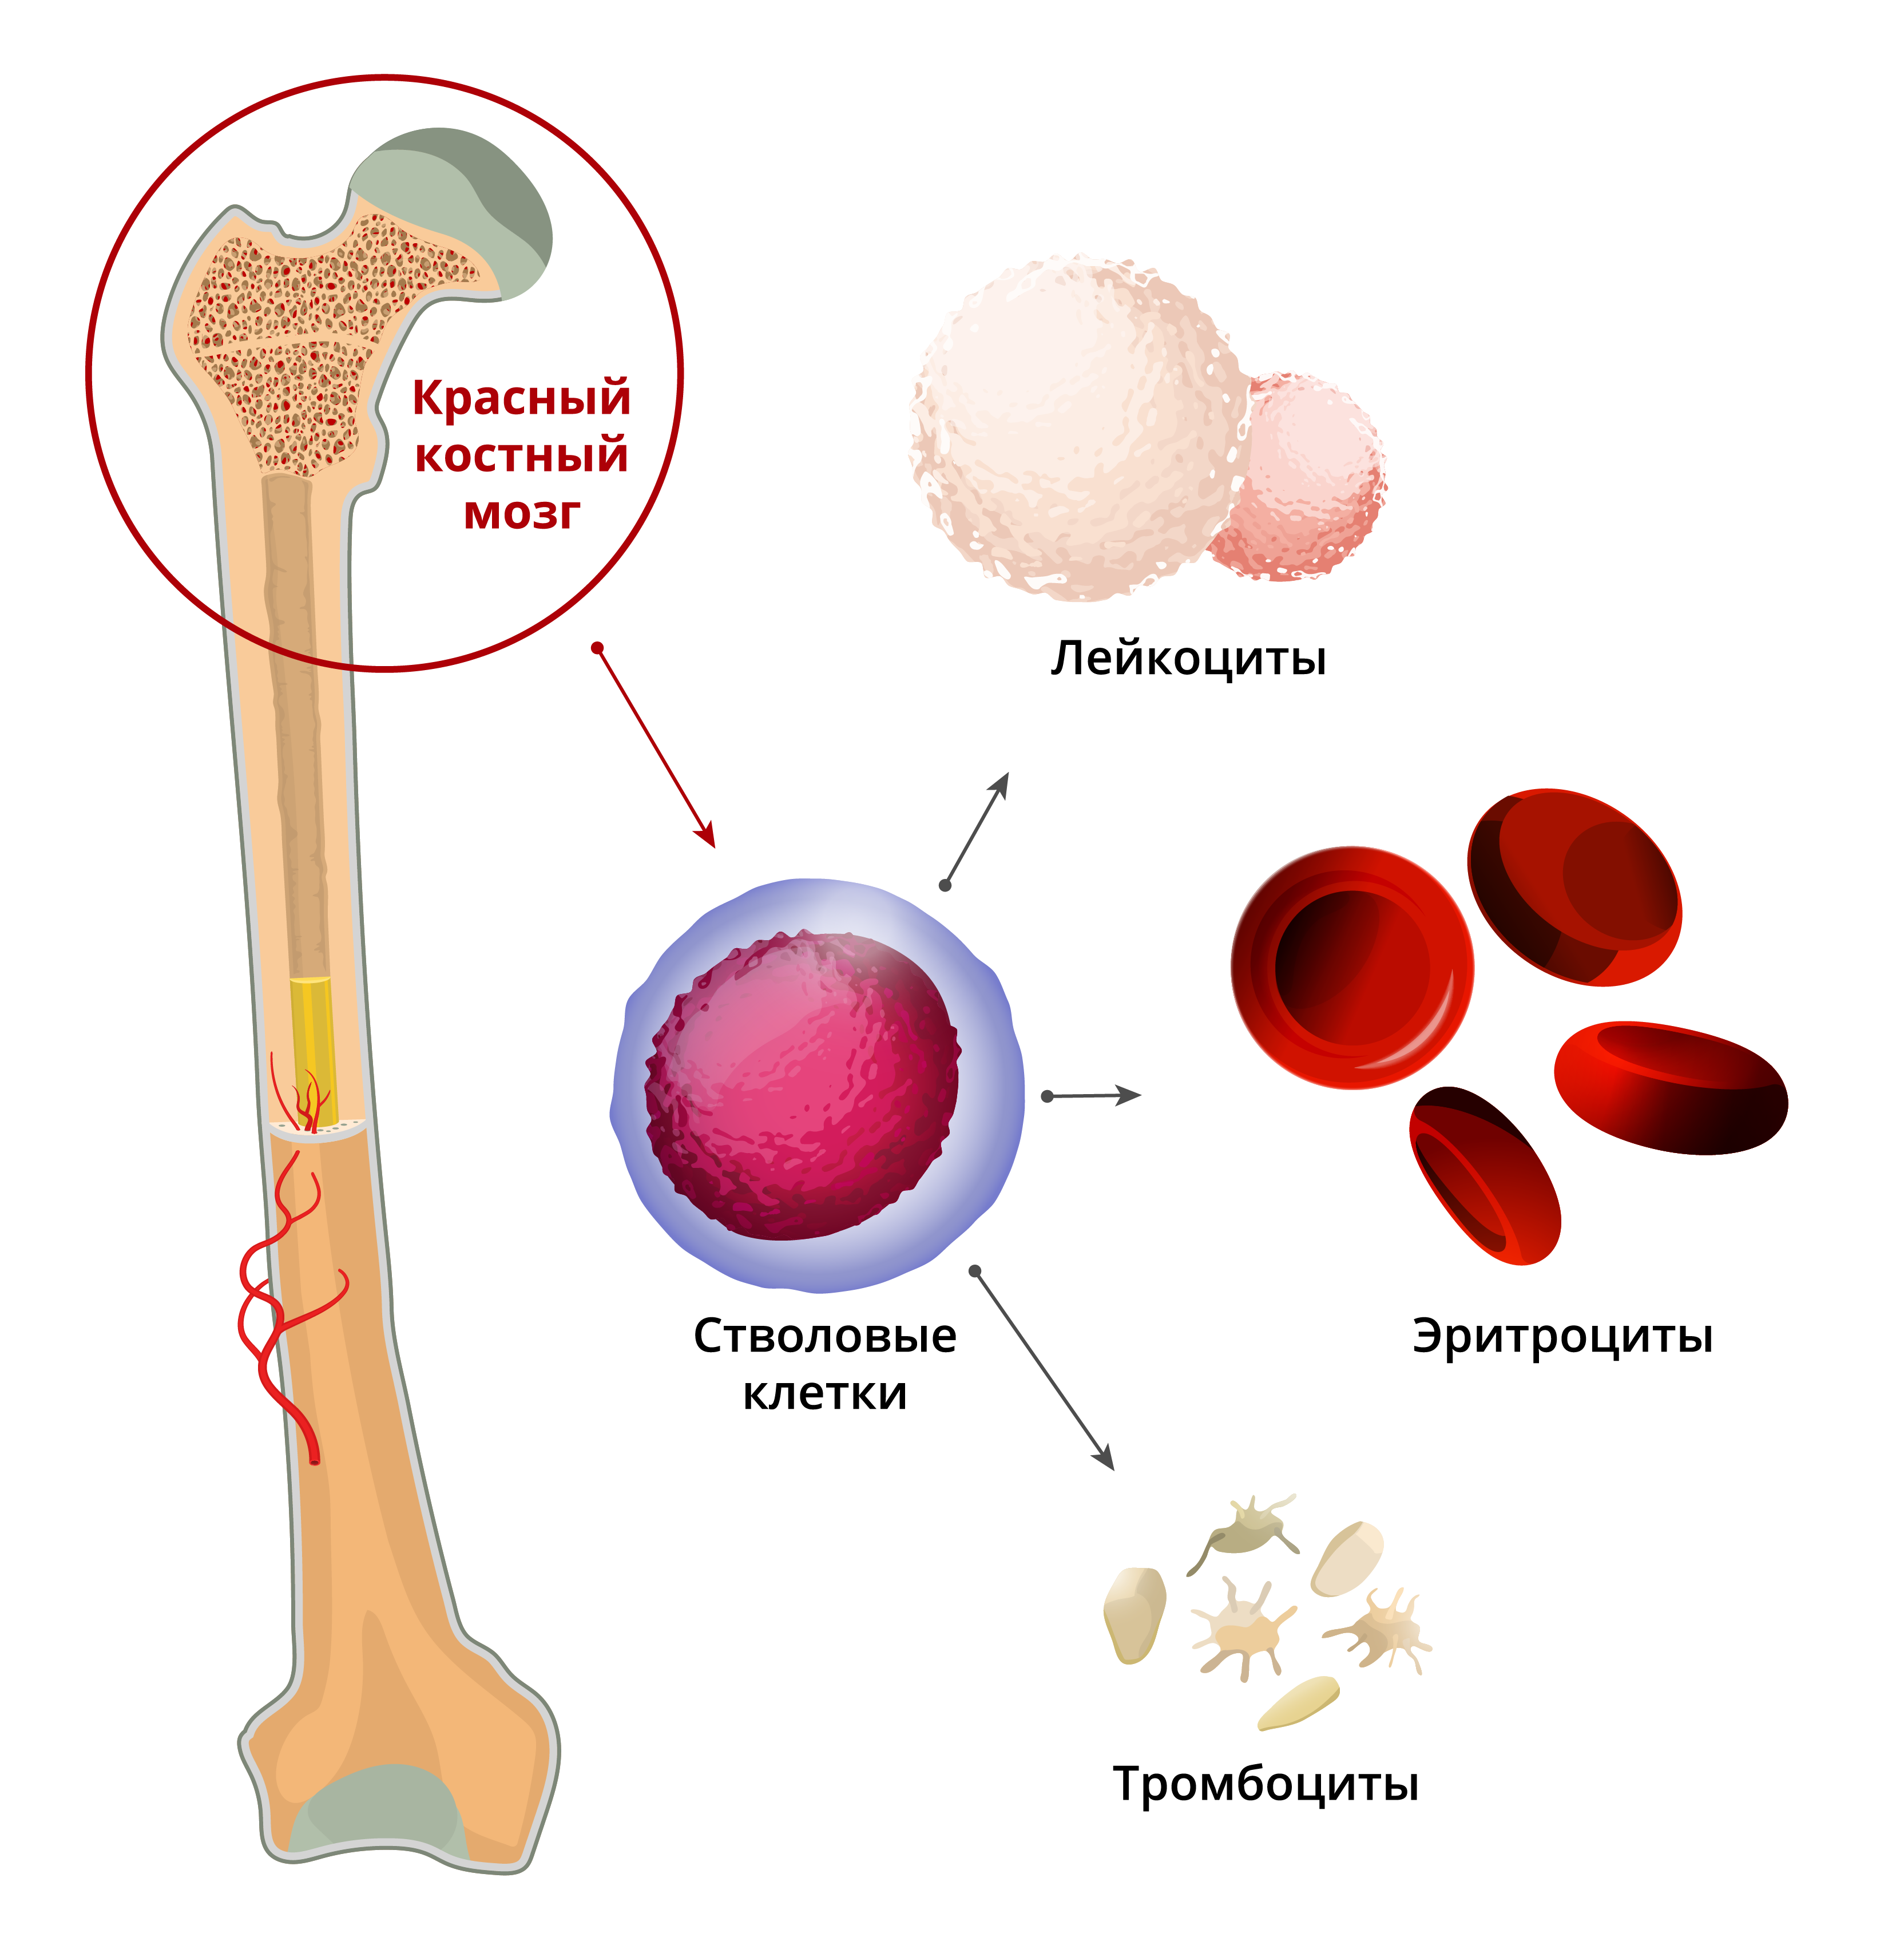 Стволовых клеток красного костного мозга:. Гемопоэтические компоненты красного костного мозга. Красный костный мозг анатомические образования. Остеогенные клетки красного костного мозга. Клетки крови образующийся в костном мозге